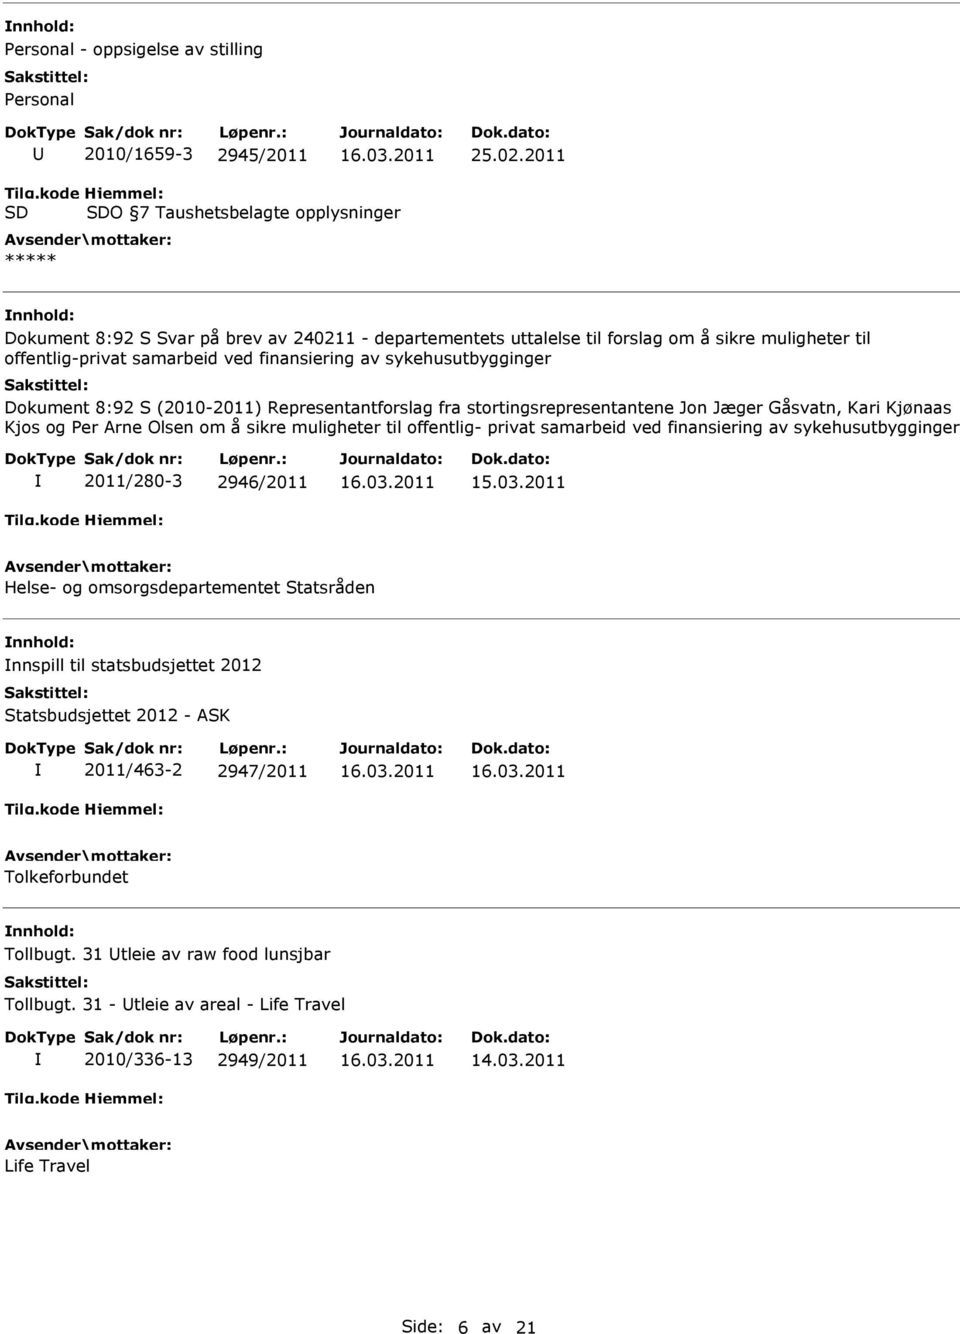 sykehusutbygginger Dokument 8:92 S (2010-2011) Representantforslag fra stortingsrepresentantene Jon Jæger Gåsvatn, Kari Kjønaas Kjos og Per Arne Olsen om å sikre muligheter til offentlig- privat